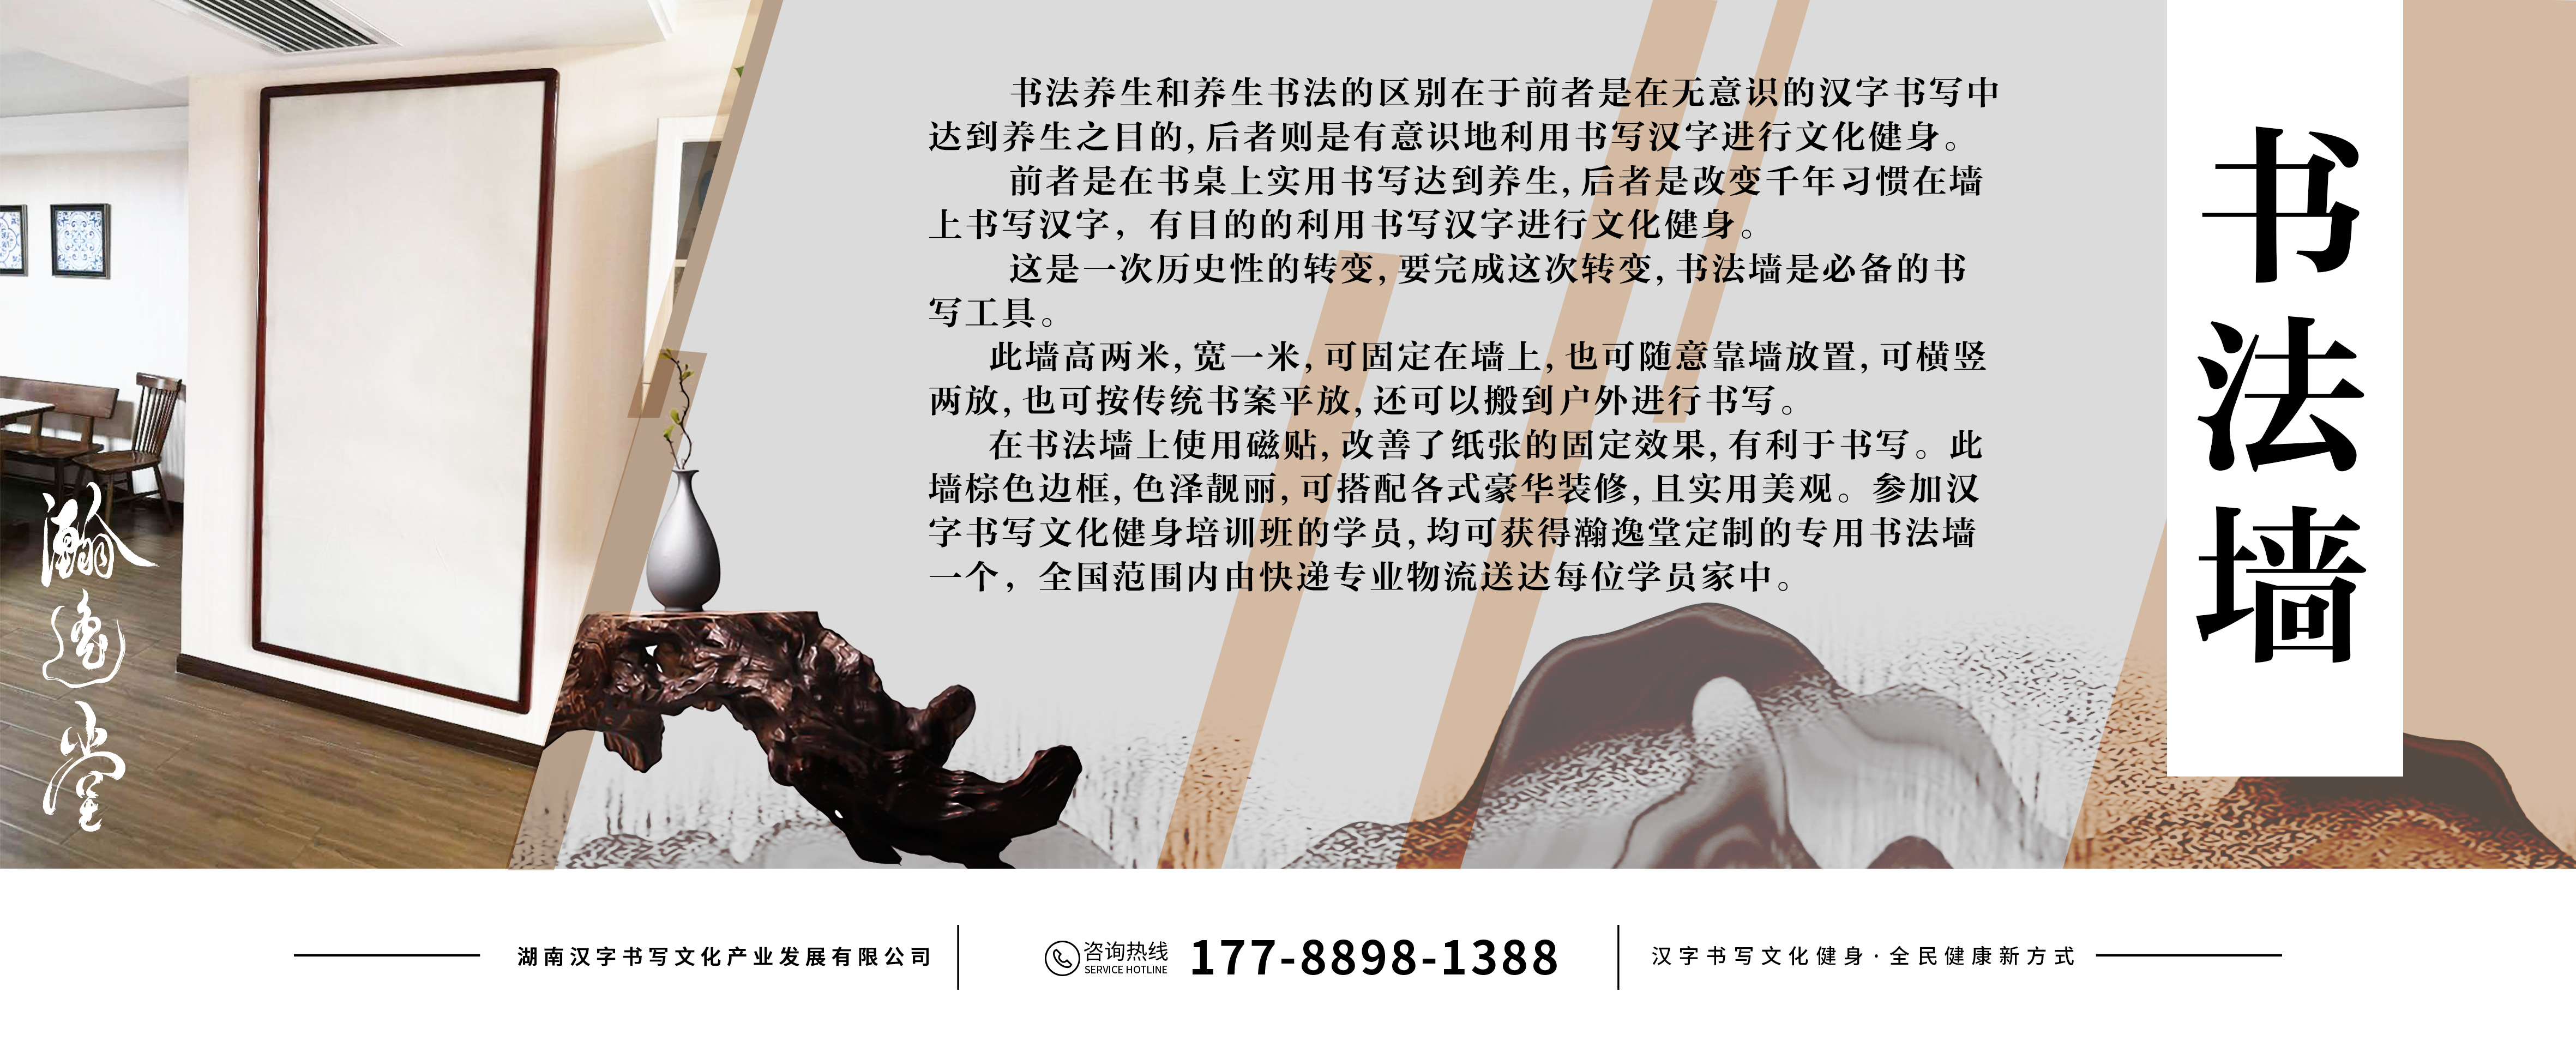 中国书法满足人类生命需要的艺术之花第一章- 艺术动态- 湖南汉字书写  image